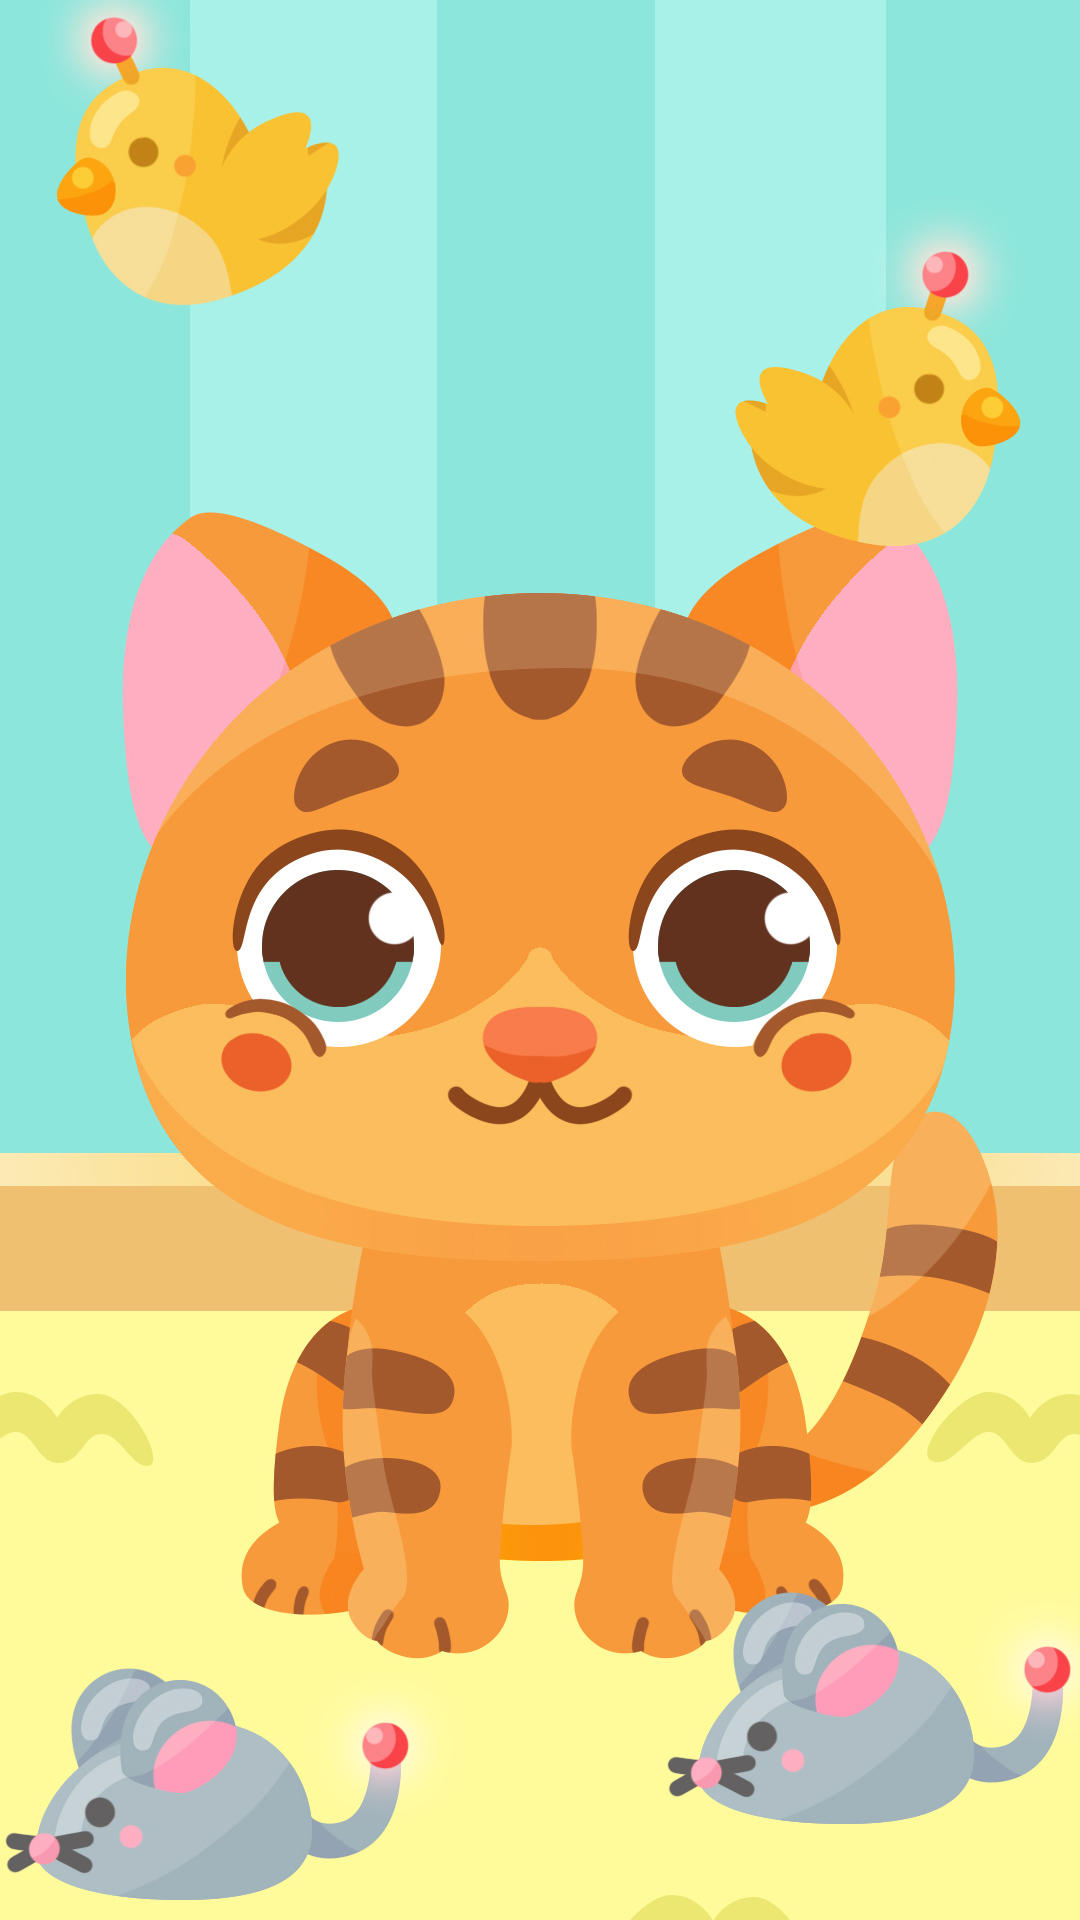 Screenshot 1 of Permainan kucing comel untuk kanak-kanak dari 3 hingga 6 tahun 1.0